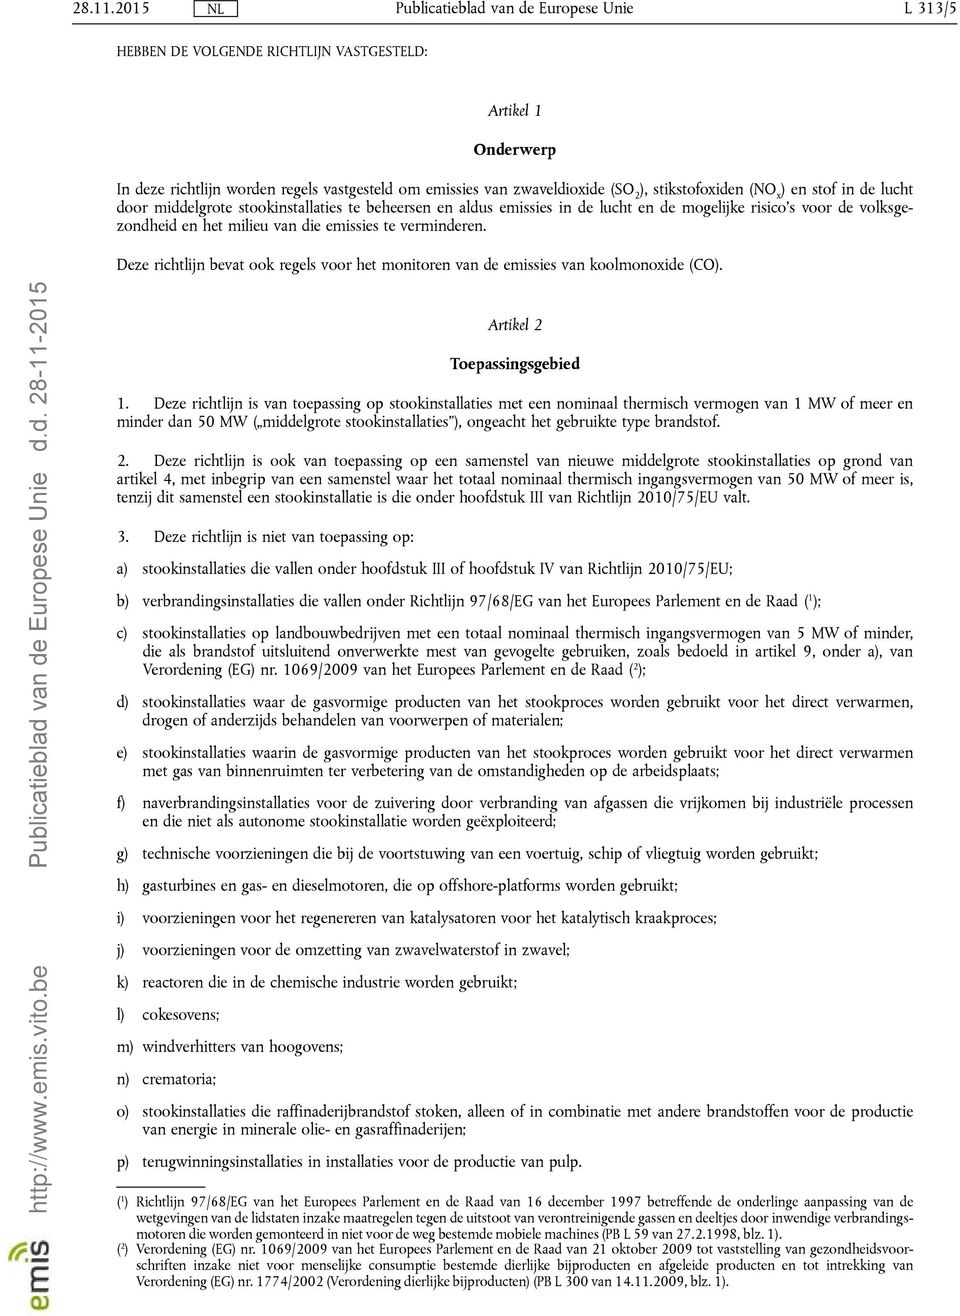 Deze richtlijn bevat ook regels voor het monitoren van de emissies van koolmonoxide (CO). http://www.emis.vito.be d.d. 28-11-2015 Artikel 2 Toepassingsgebied 1.